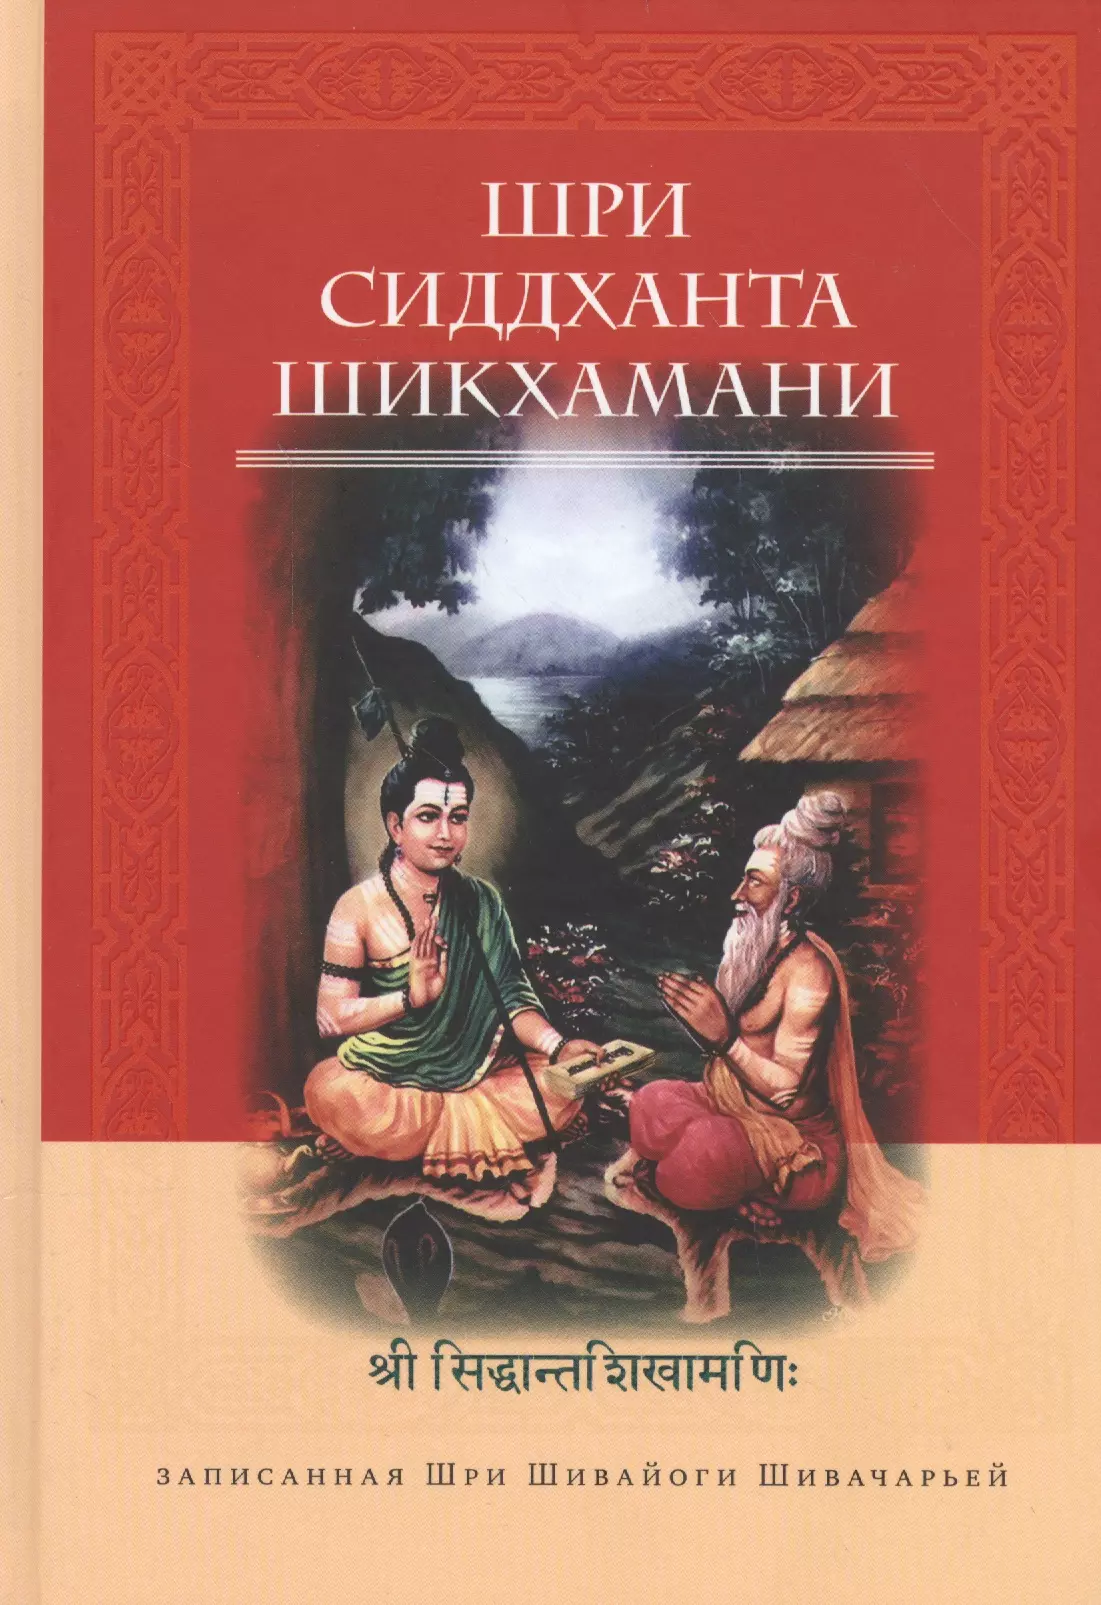 Шивачарья Шри Шивайогин - Шри Сиддханта Шикхамани, записанная Шри Шивайогином Шивачарьей